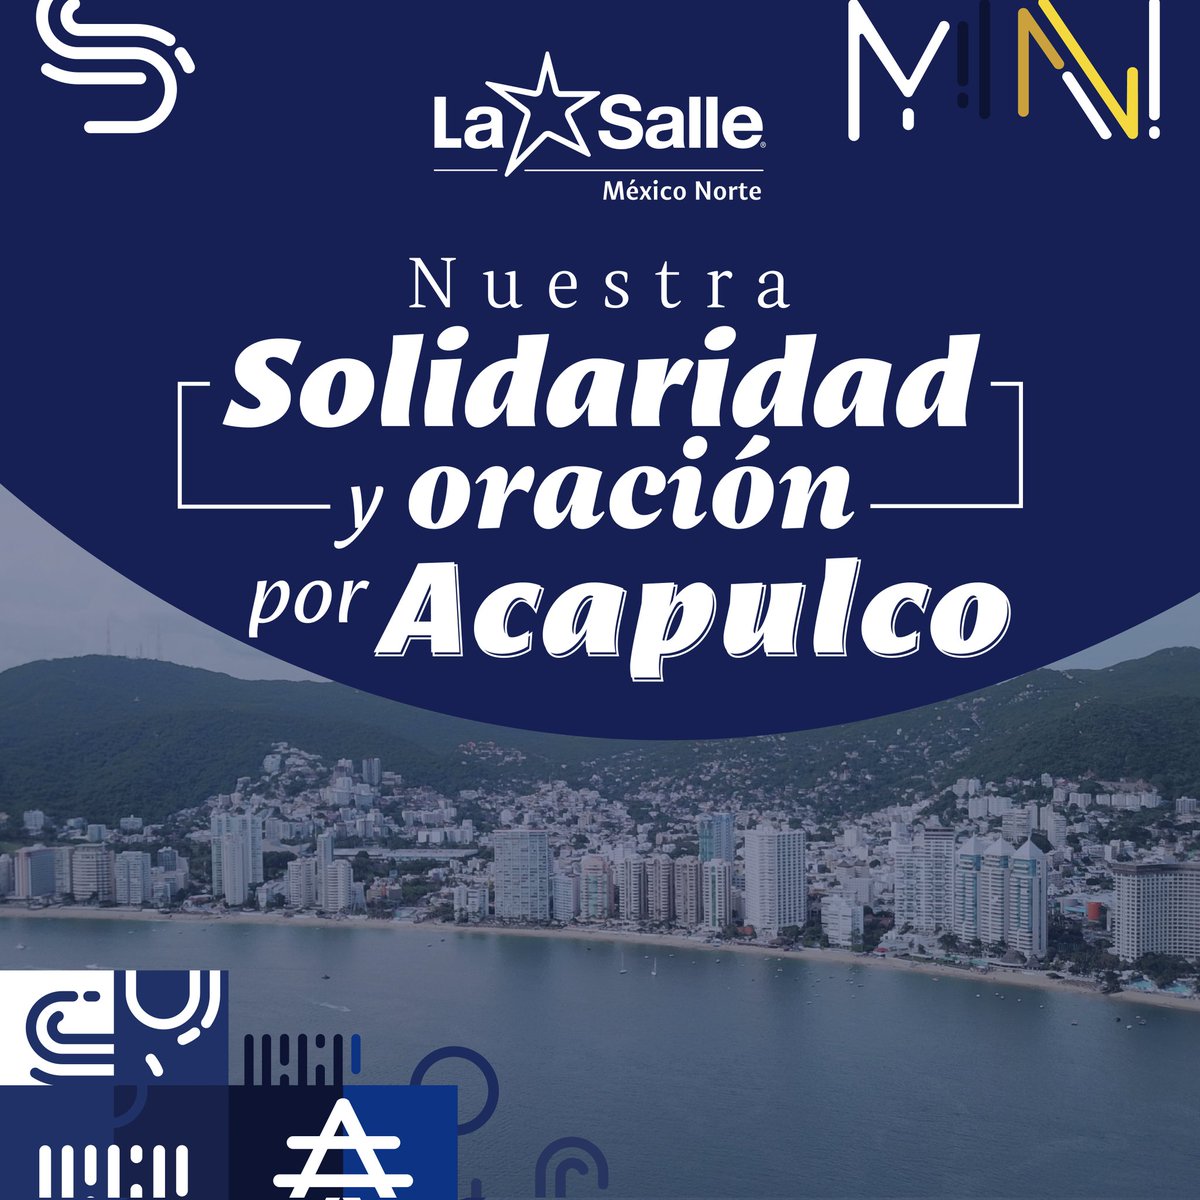 Los #Lasallistas nos unimos en oración 🙏🏻 y solidaridad 🤲🏼 con nuestras hermanas y hermanos de #Acapulco. 
¡Sabemos que viven una experiencia muy dolorosa pero con esperanza y sostenidos en la fe! Estamos con ustedes. #SomosLaSalle #HacemosComunidad 🌟